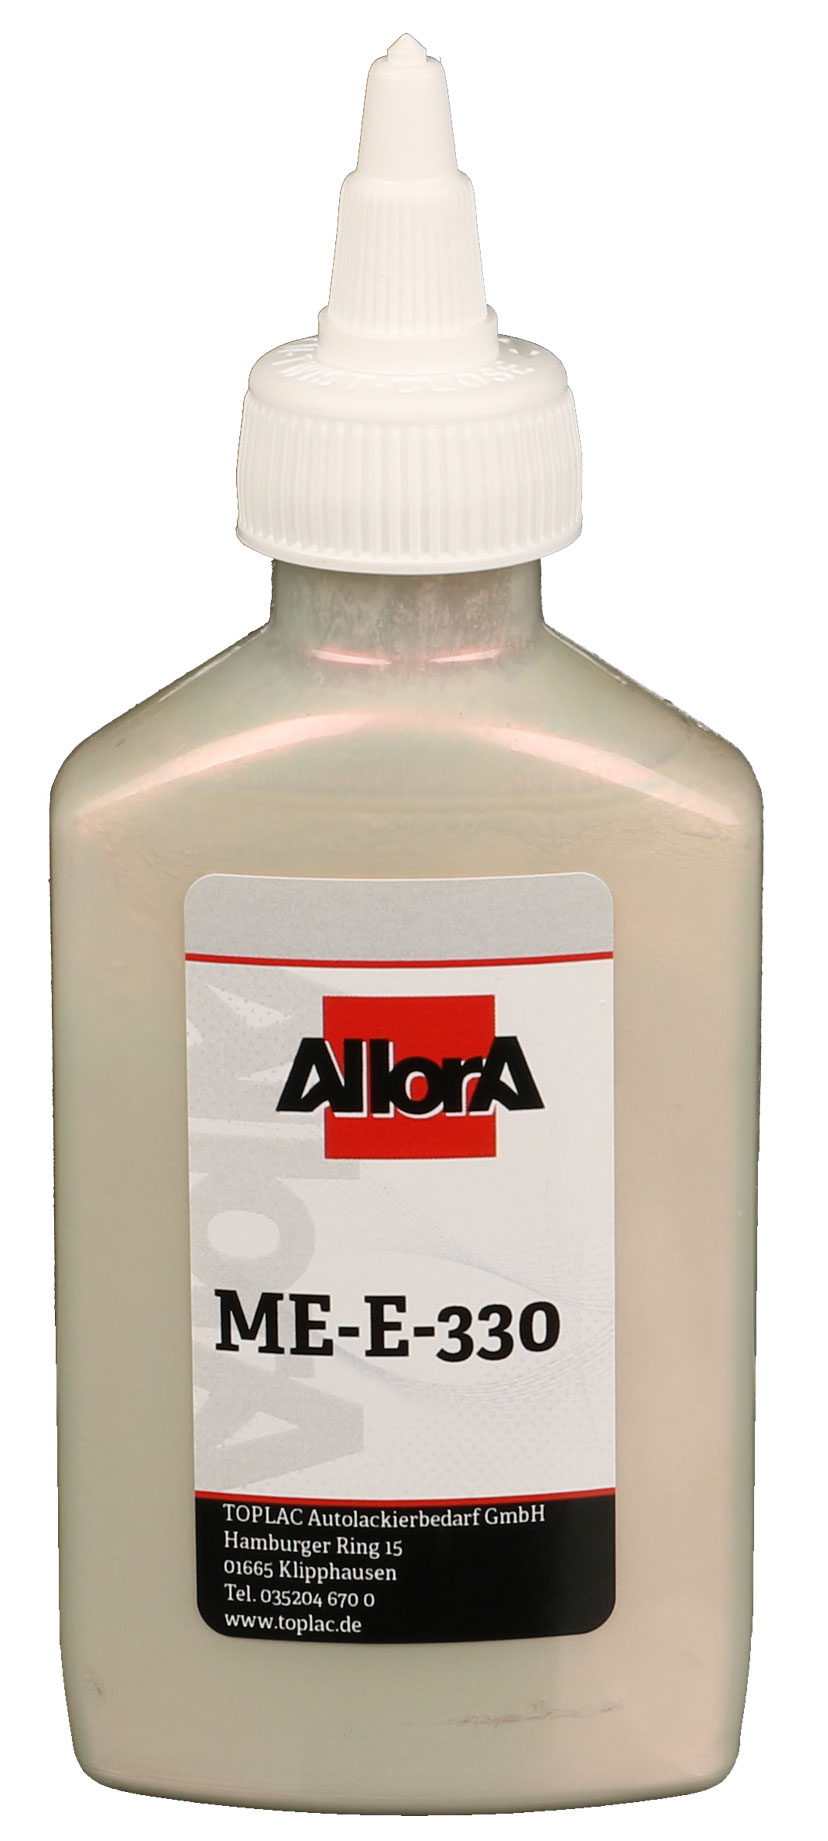 AllorA Multi-Effekt ME-E-330